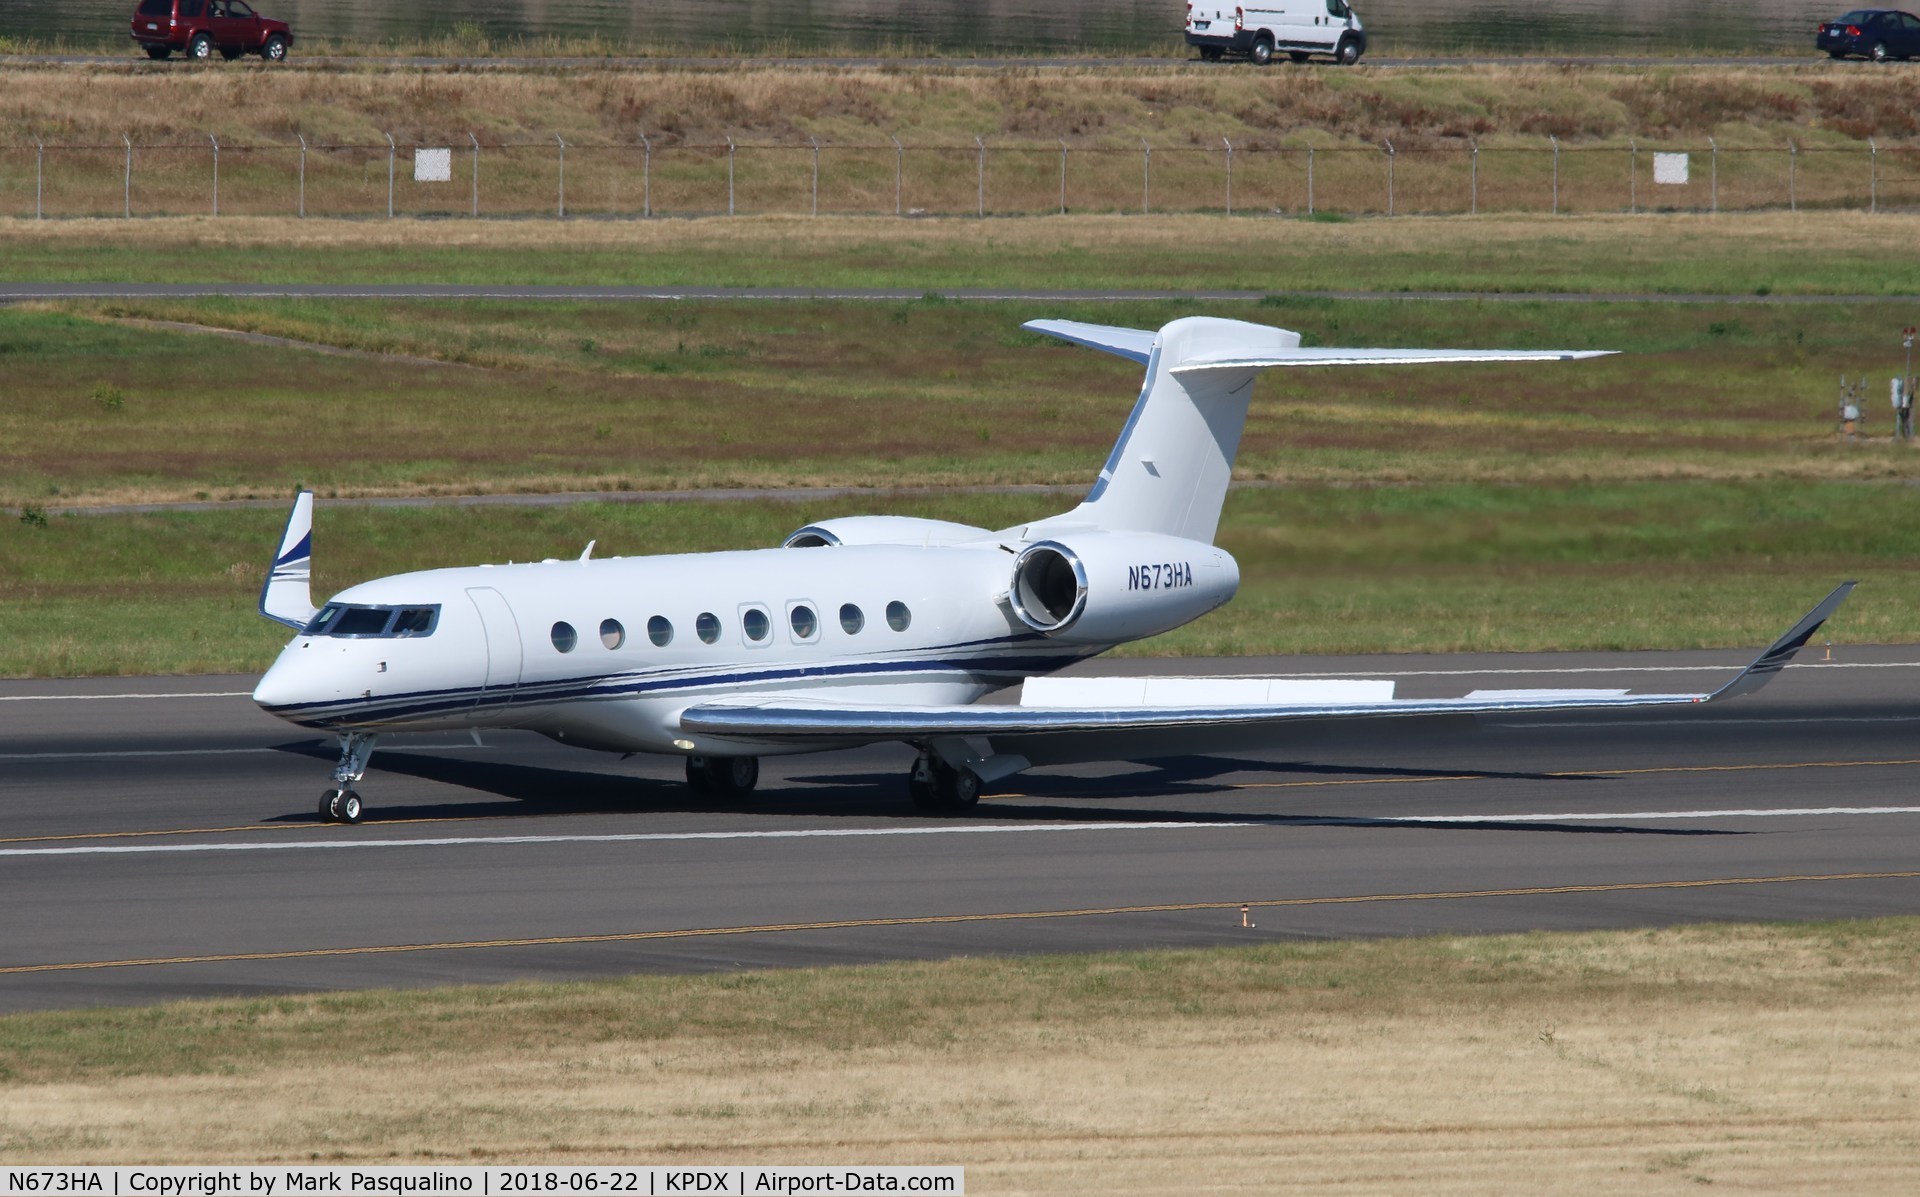 N673HA, 2013 Gulfstream Aerospace G650 (G-VI) C/N 6018, Gulfstream VI